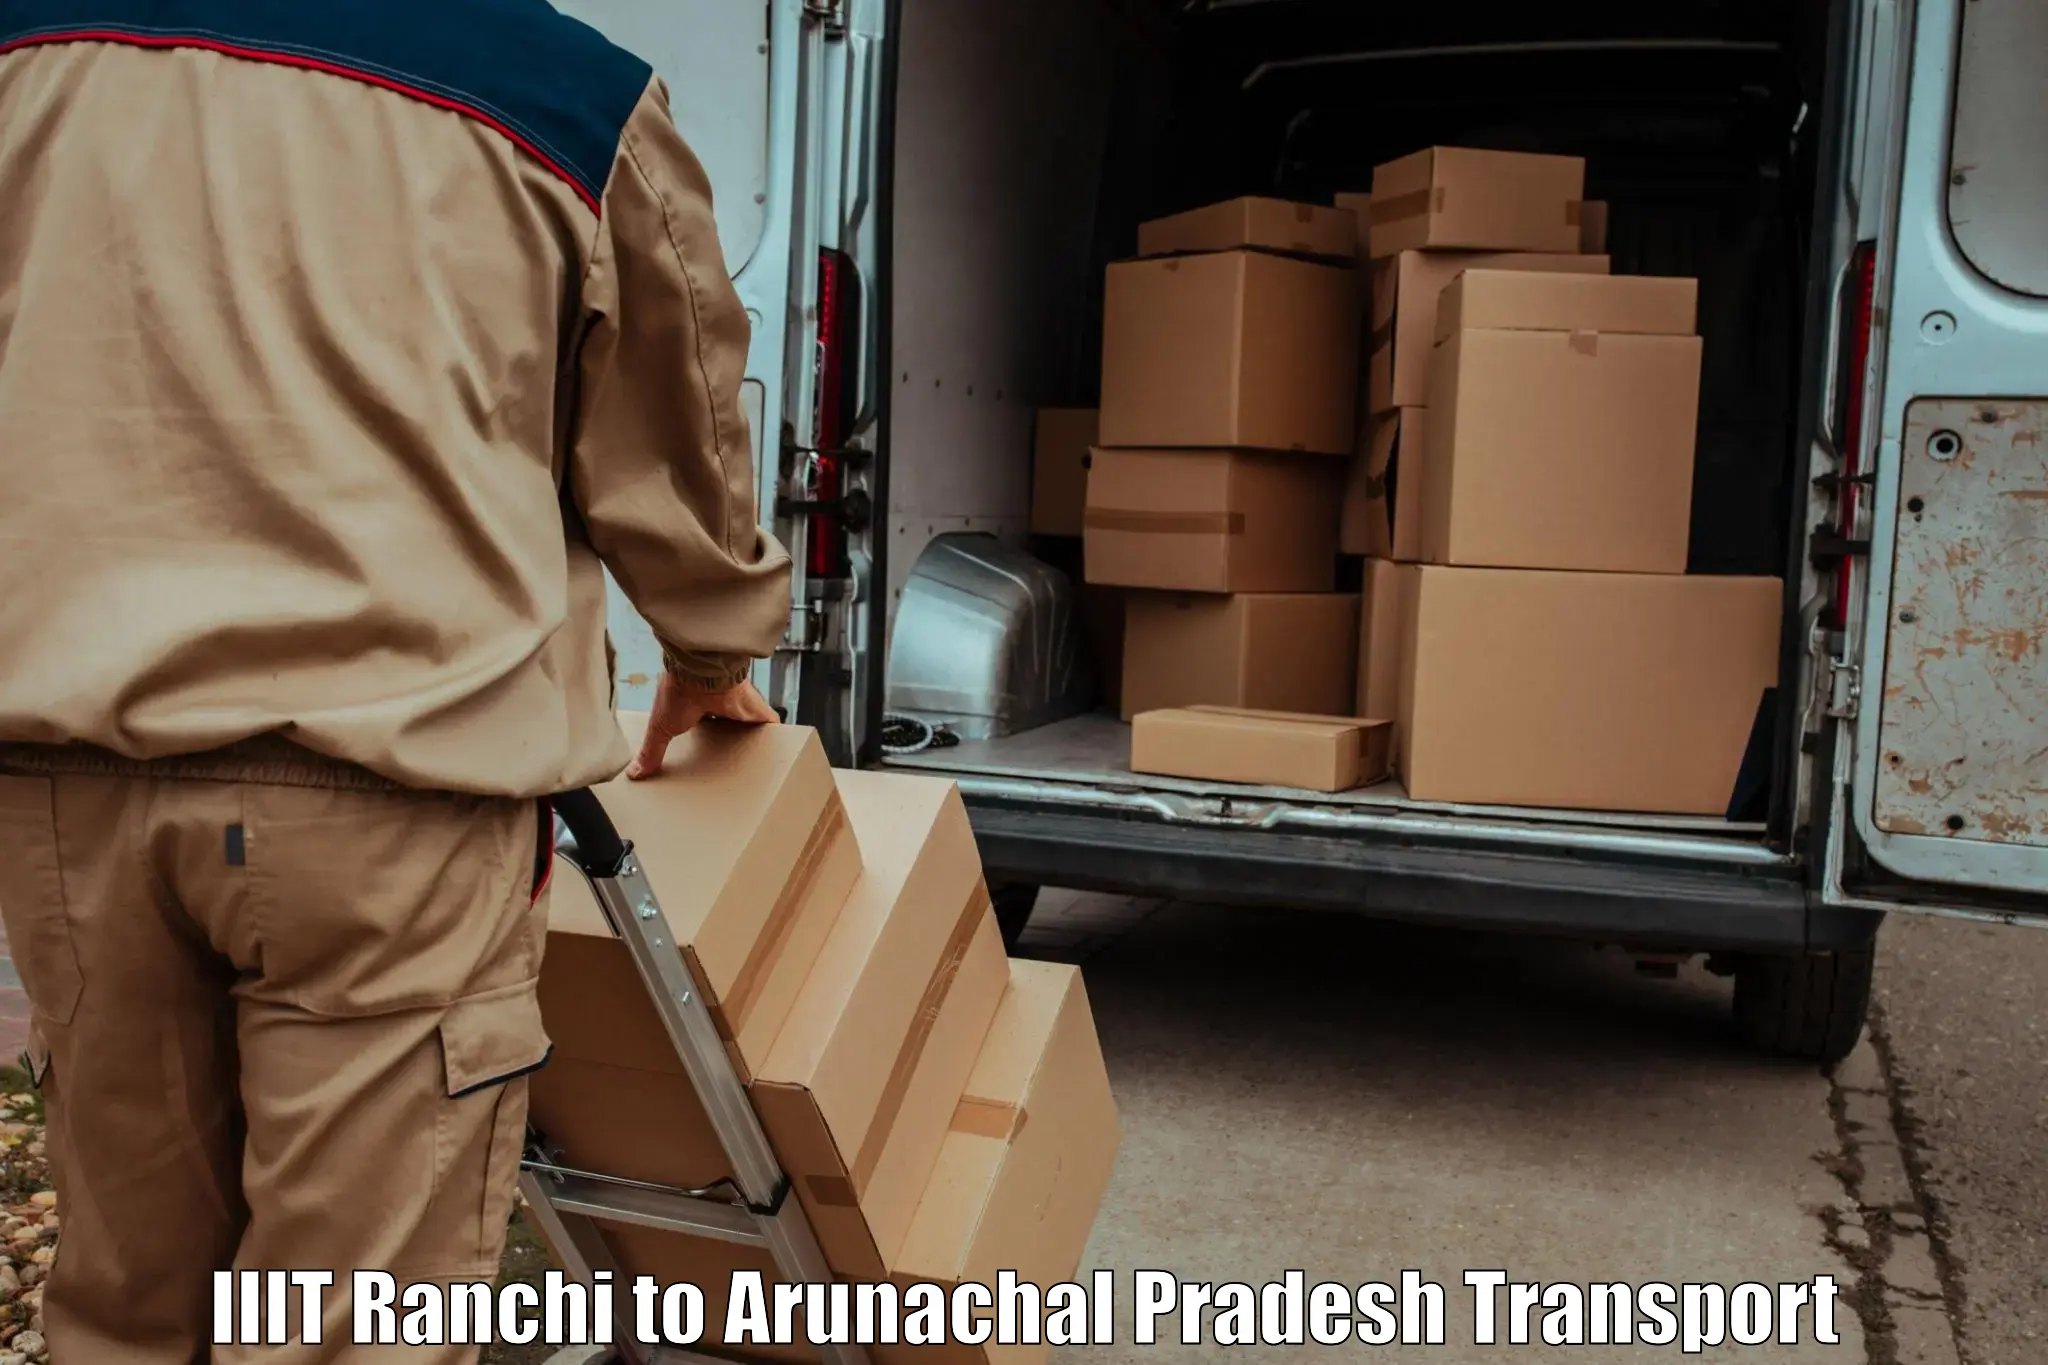 Container transport service IIIT Ranchi to Arunachal Pradesh